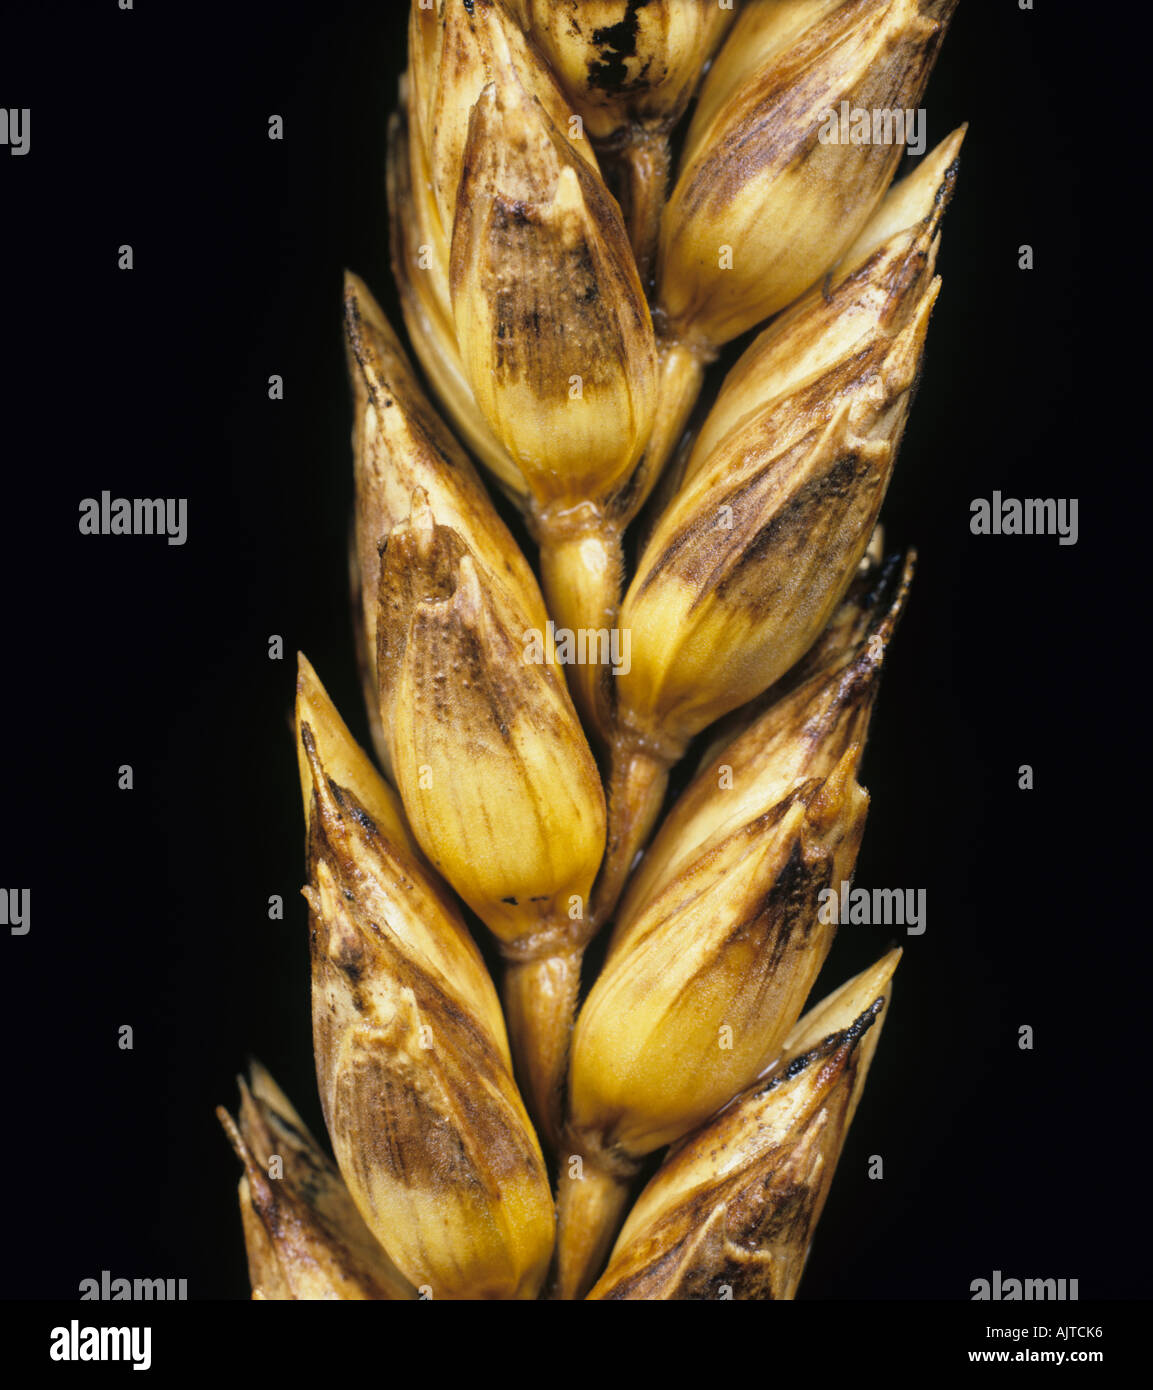 Glume blotch (Phaeosphaeria nodorum) infected wheat ear Stock Photo